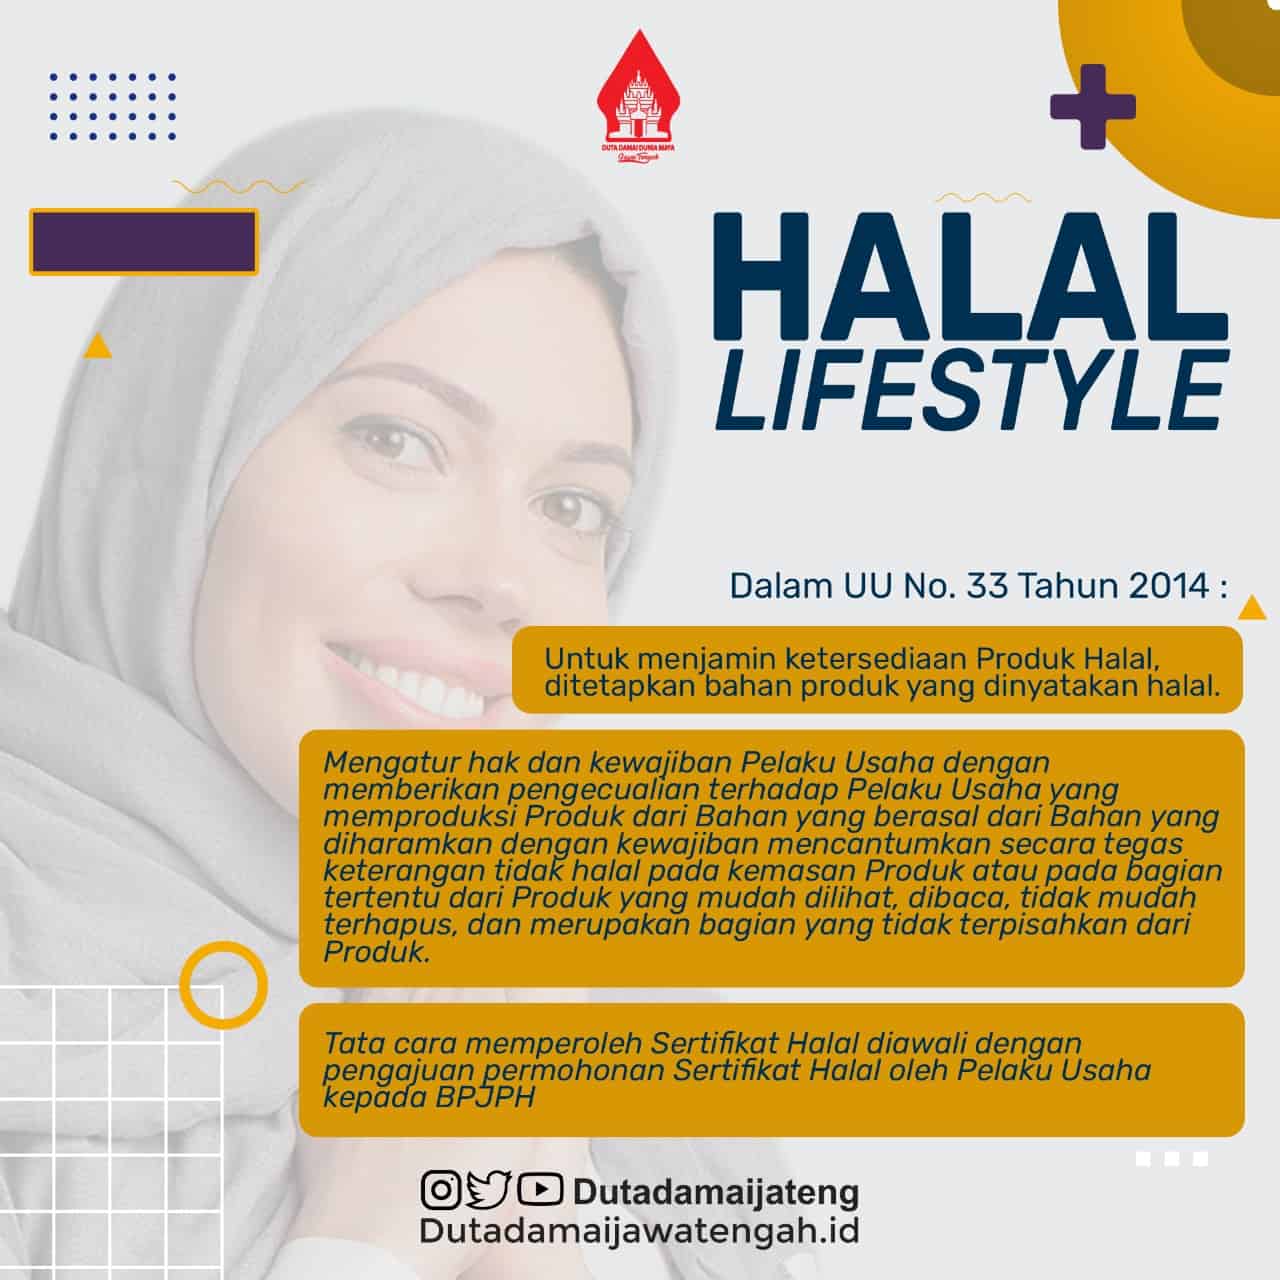 Halal Life style, Menjawab Tantangan Generasi Milenial Muslim di Era Disrupsi dan Globalisasi Terhadap Cara Berpakaian dan Berpikir: Your Appearance Is What You Mindset